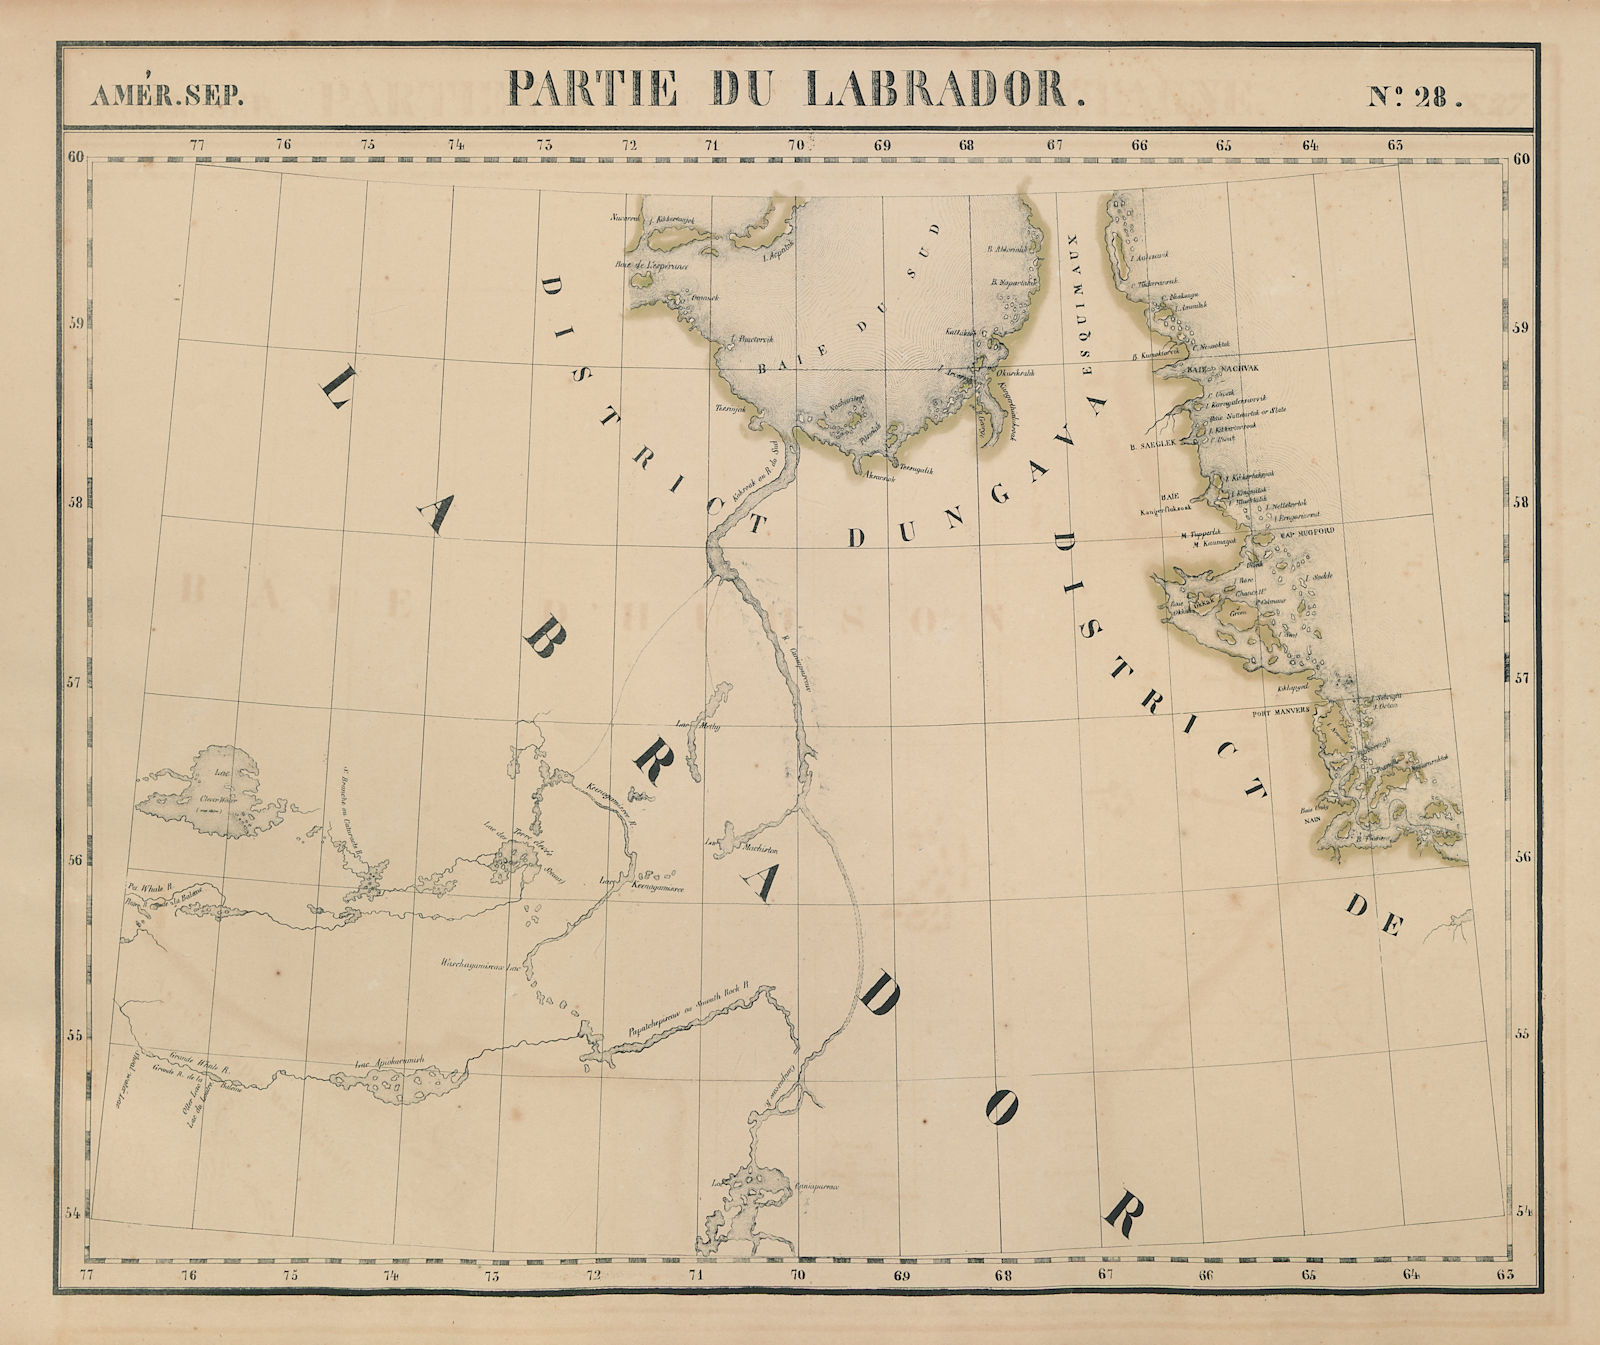 Amér. Sep. Partie du Labrador #28. Quebec Labrador north. VANDERMAELEN 1827 map